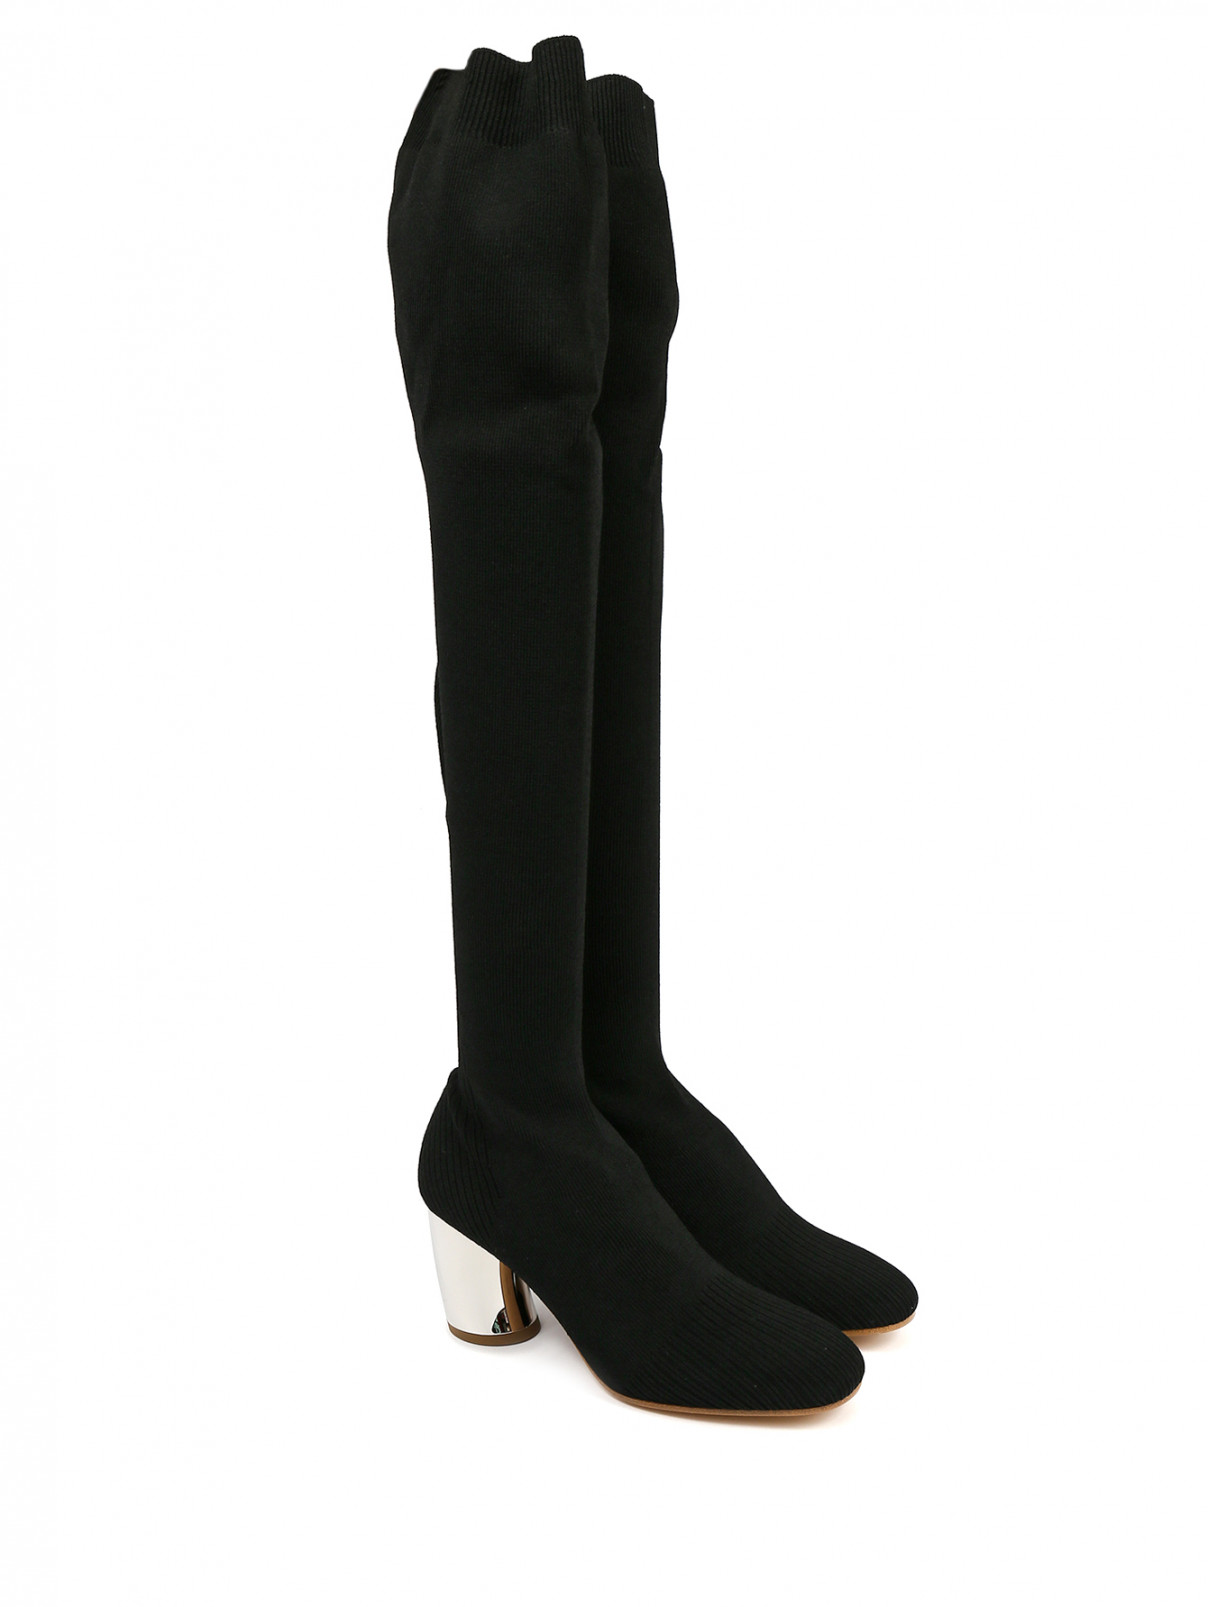 Трикотажные сапоги-ботфорты на контрастном каблуке Proenza Schouler  –  Общий вид  – Цвет:  Черный